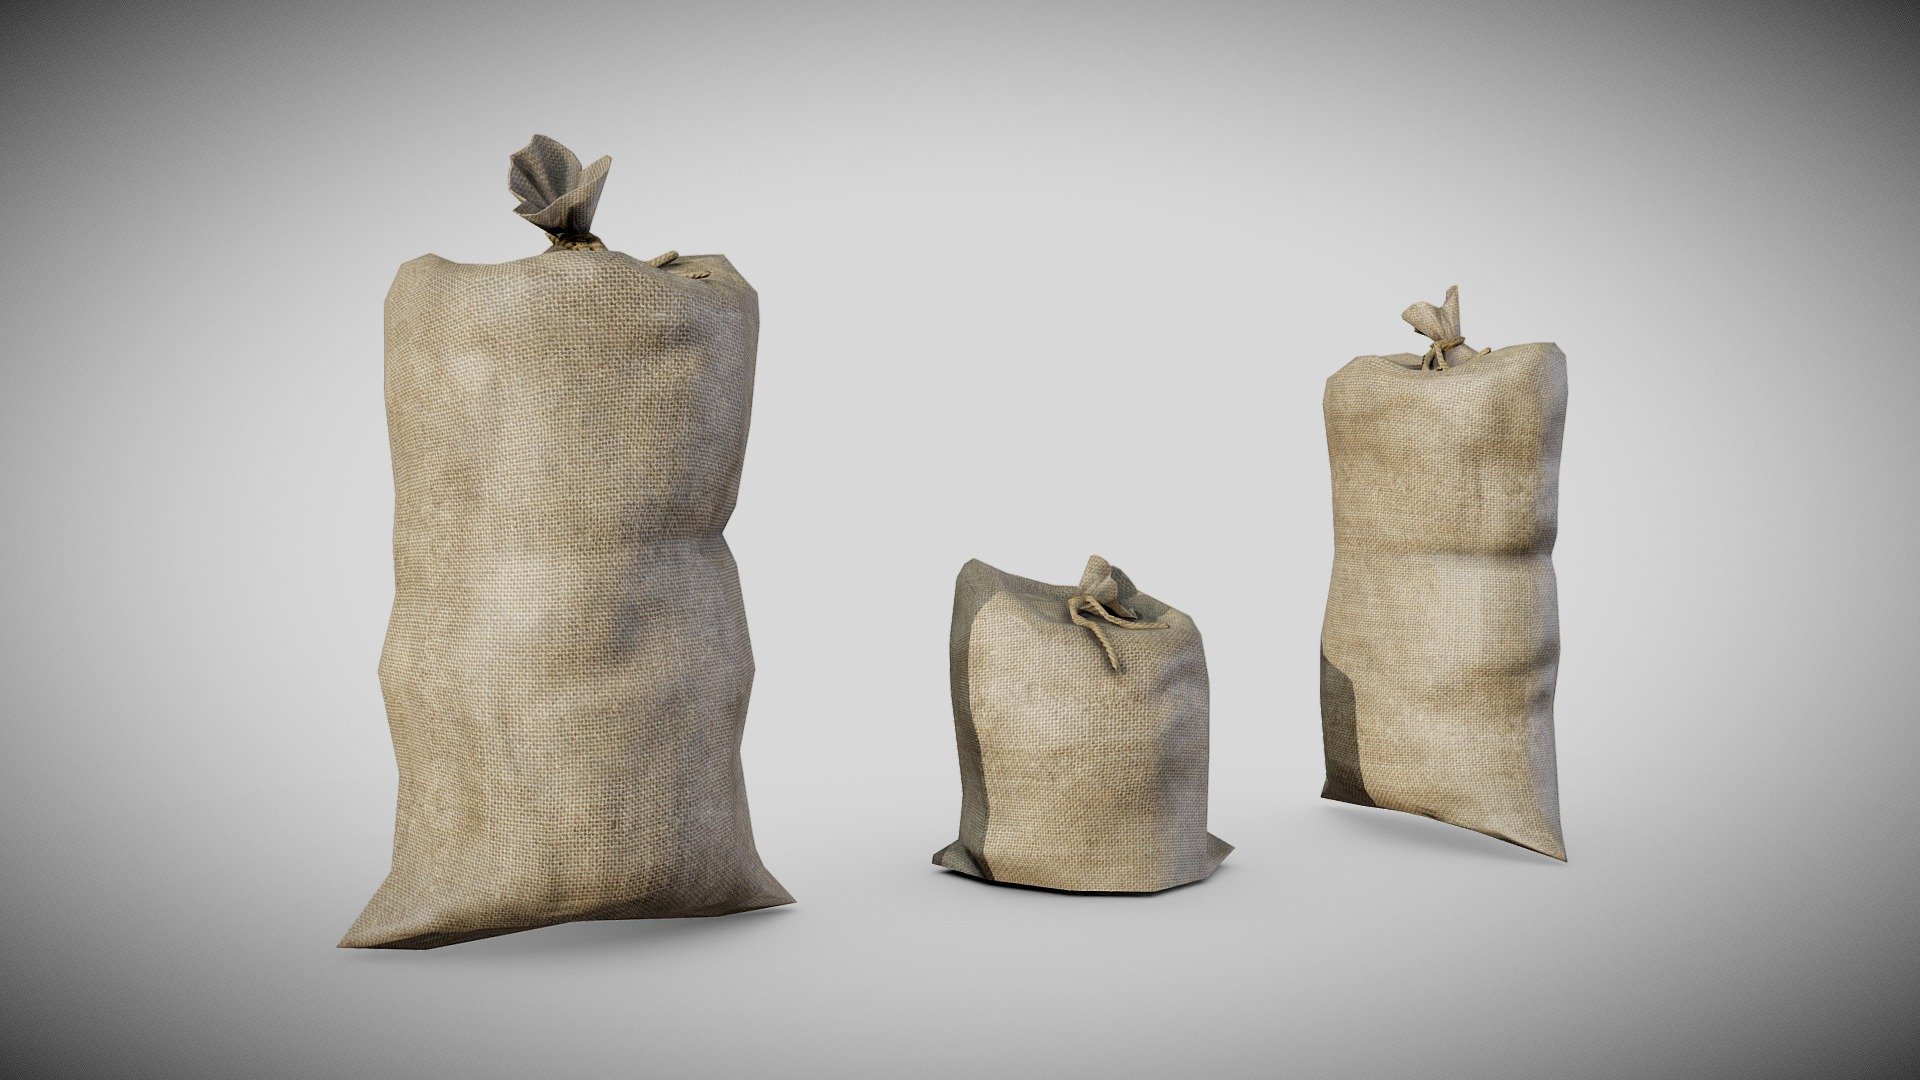 f 1832
v 993
t 1832 - PBR old potato food sack bug er1 - Buy Royalty Free 3D model by flawlessnormals 3d model